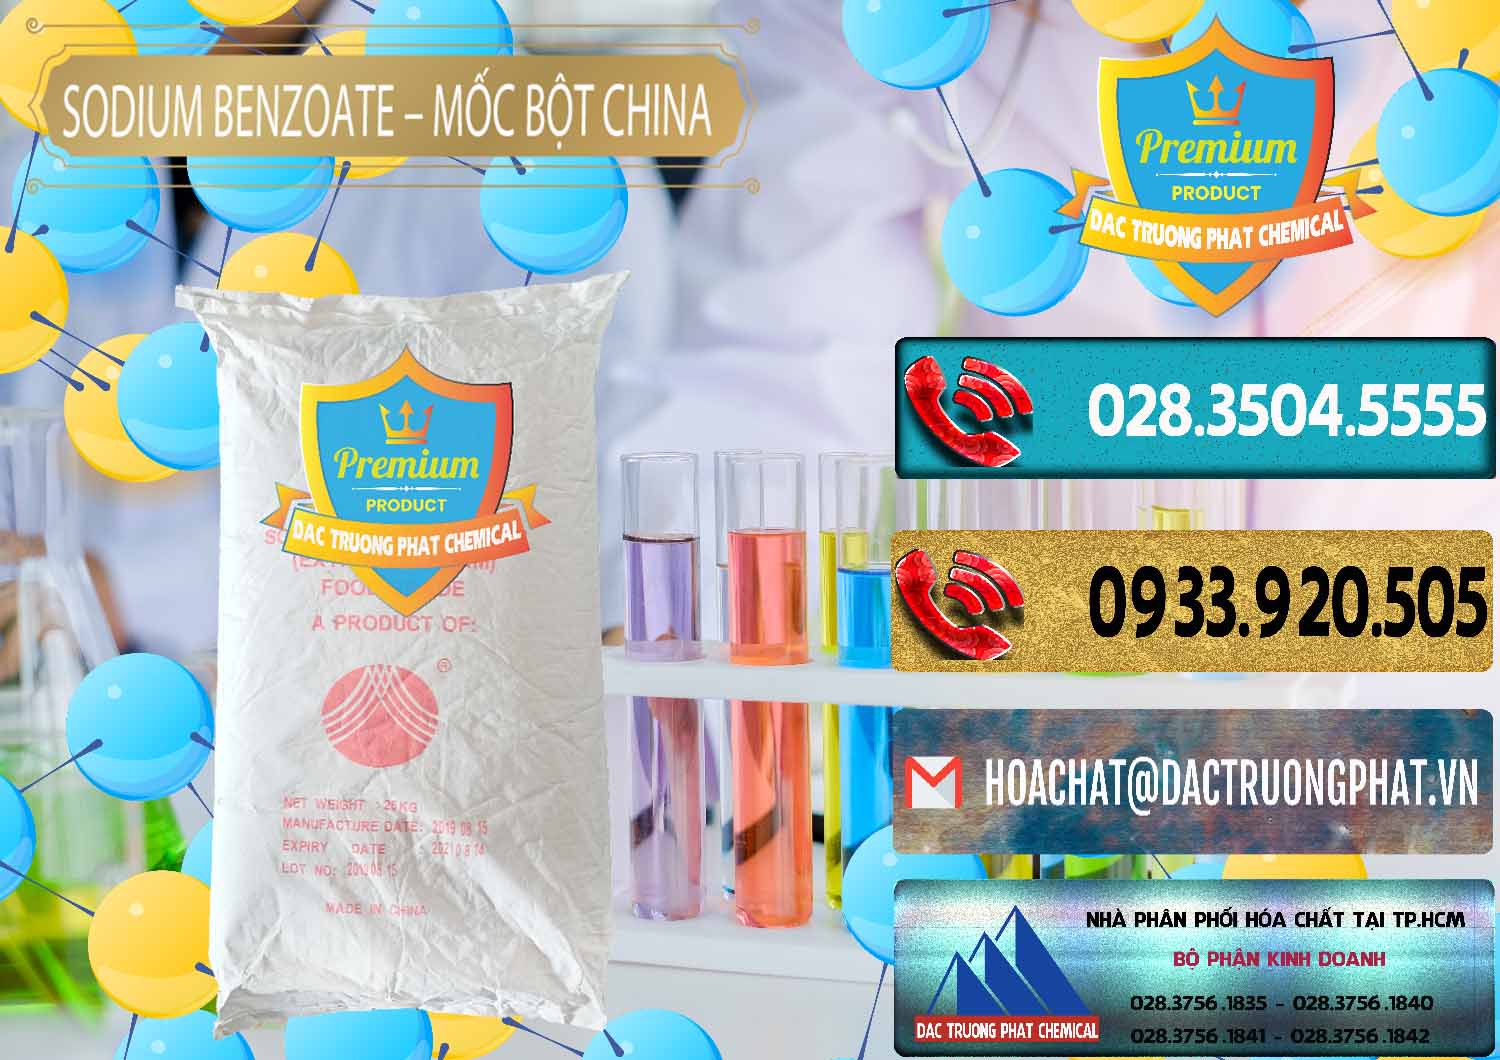 Nơi cung ứng và bán Sodium Benzoate - Mốc Bột Chữ Cam Food Grade Trung Quốc China - 0135 - Nơi nhập khẩu _ phân phối hóa chất tại TP.HCM - hoachatdetnhuom.com